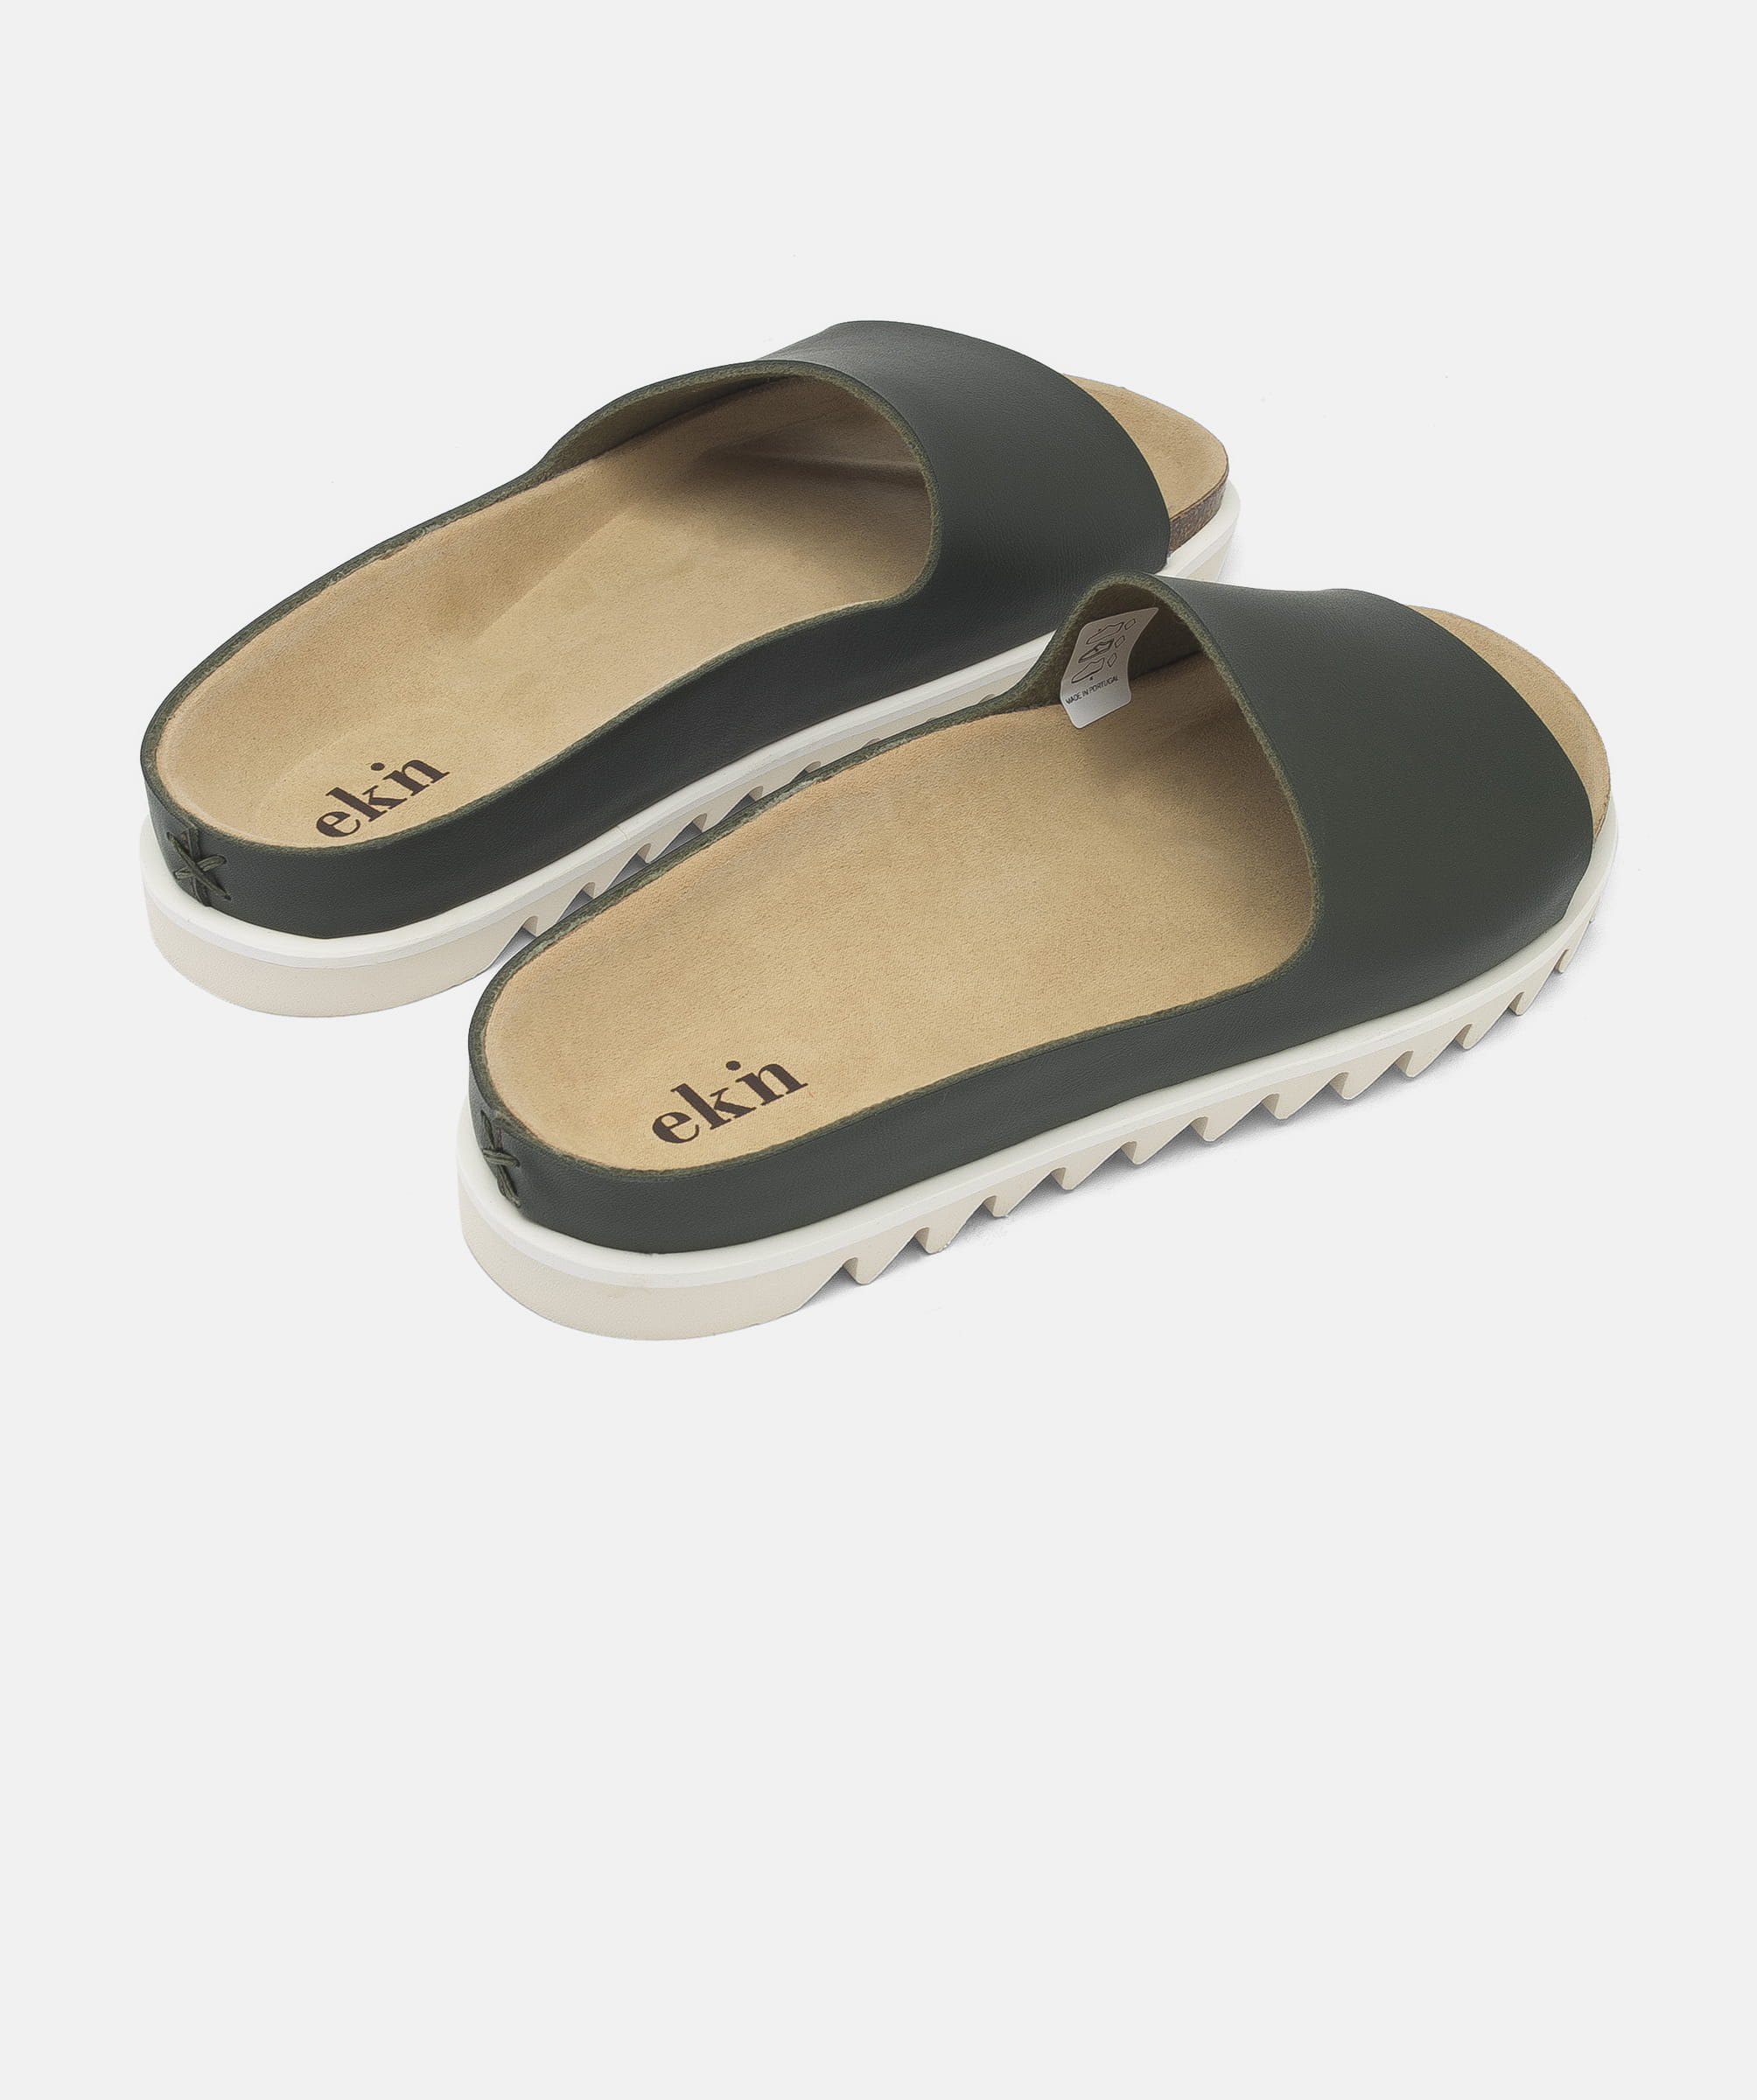 Stavning Modtager maskine frugter Stylish ladies sandal | Made in Portugal | ekn footwear